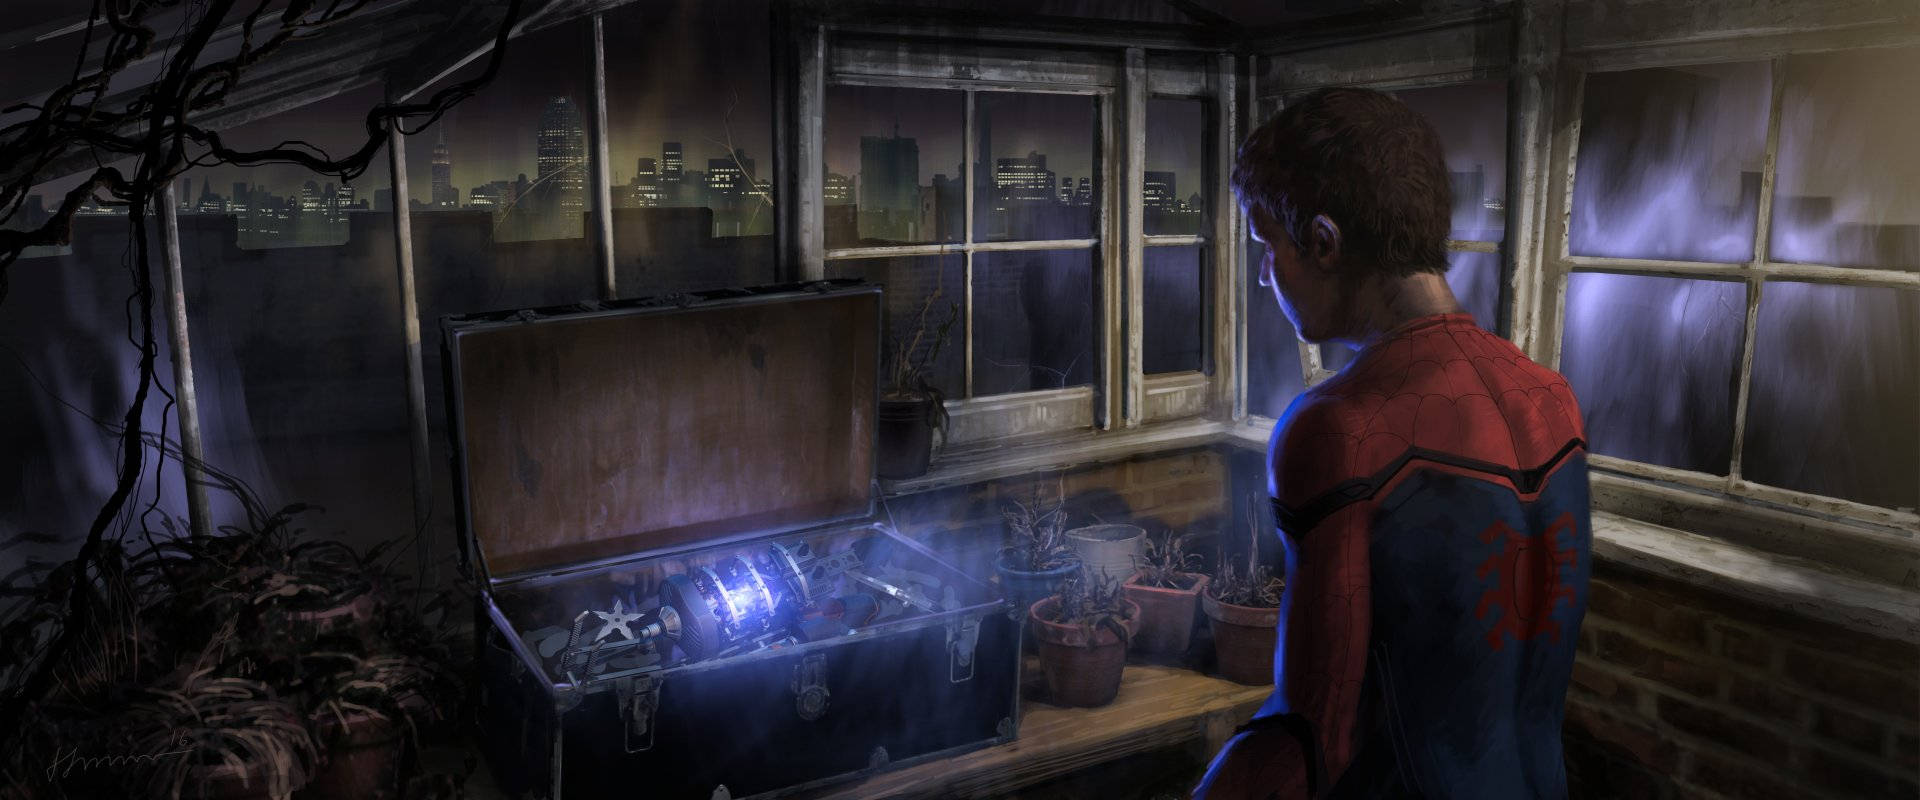 Spider Man Storage Chest 4k Background